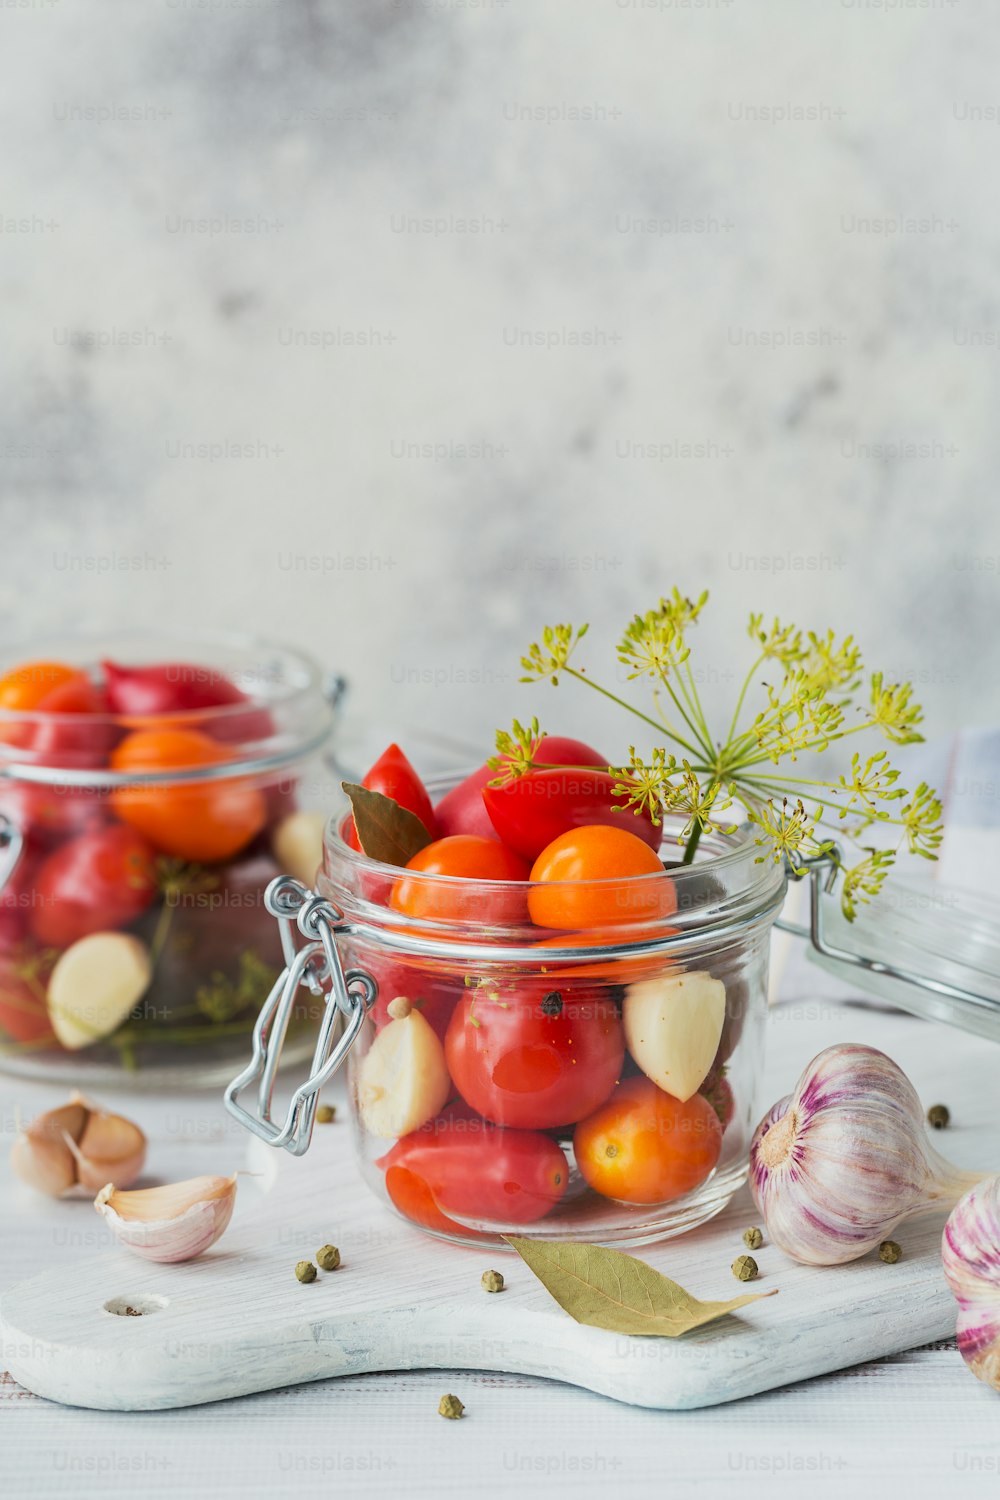 Zutaten für die Herstellung gesunder veganer Lebensmittel. Eingelegtes Gemüse. Tomaten werden zum Konservieren vorbereitet. Clean Eating, vegetarisches Food-Konzept